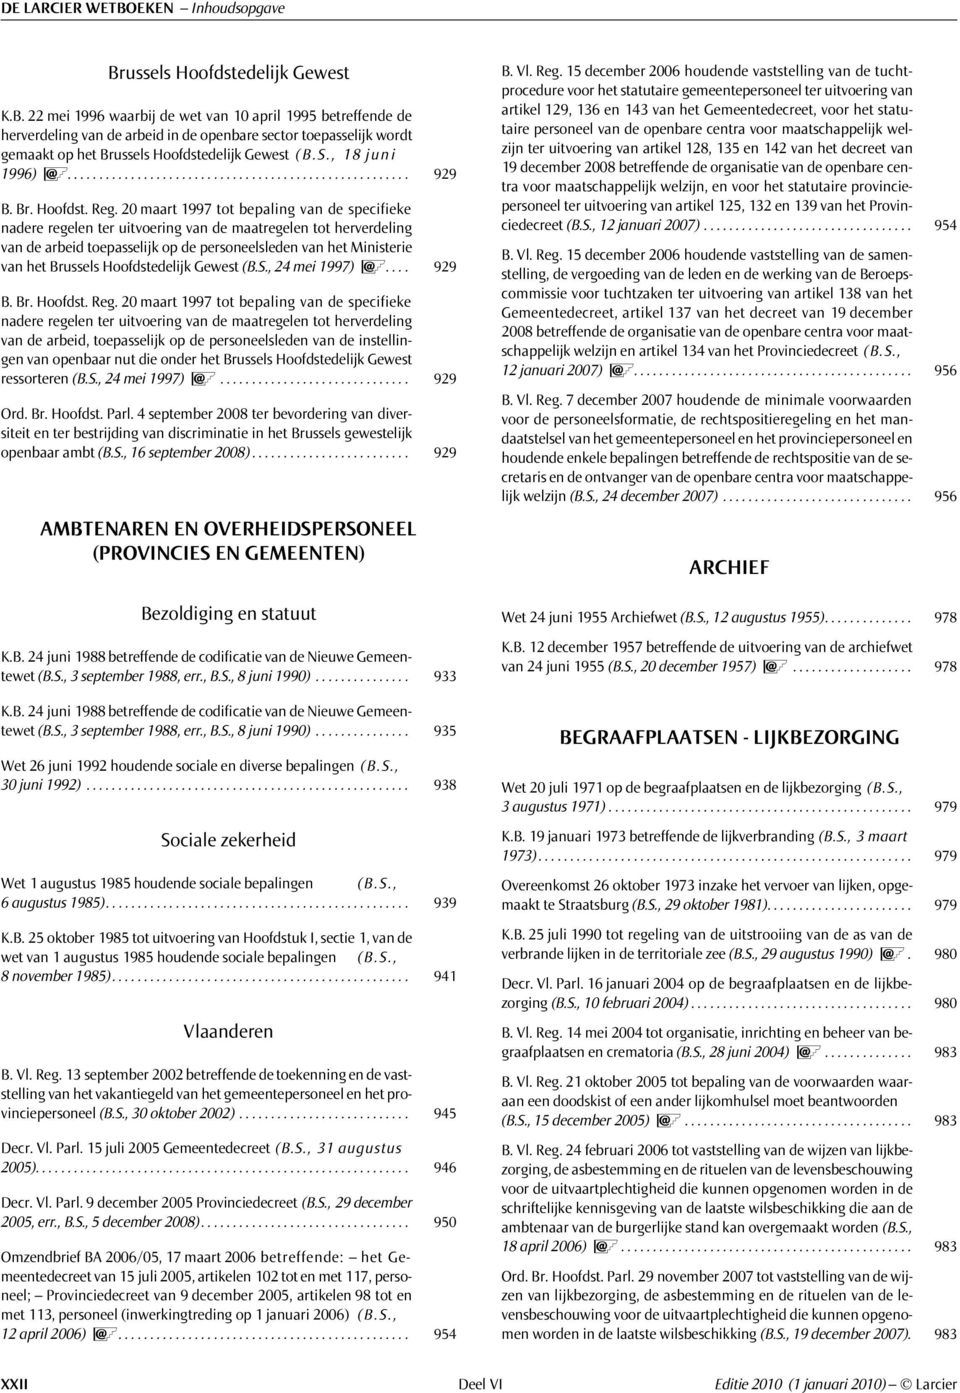 20 maart 1997 tot bepaling van de specifieke nadere regelen ter uitvoering van de maatregelen tot herverdeling van de arbeid toepasselijk op de personeelsleden van het Ministerie van het Brussels